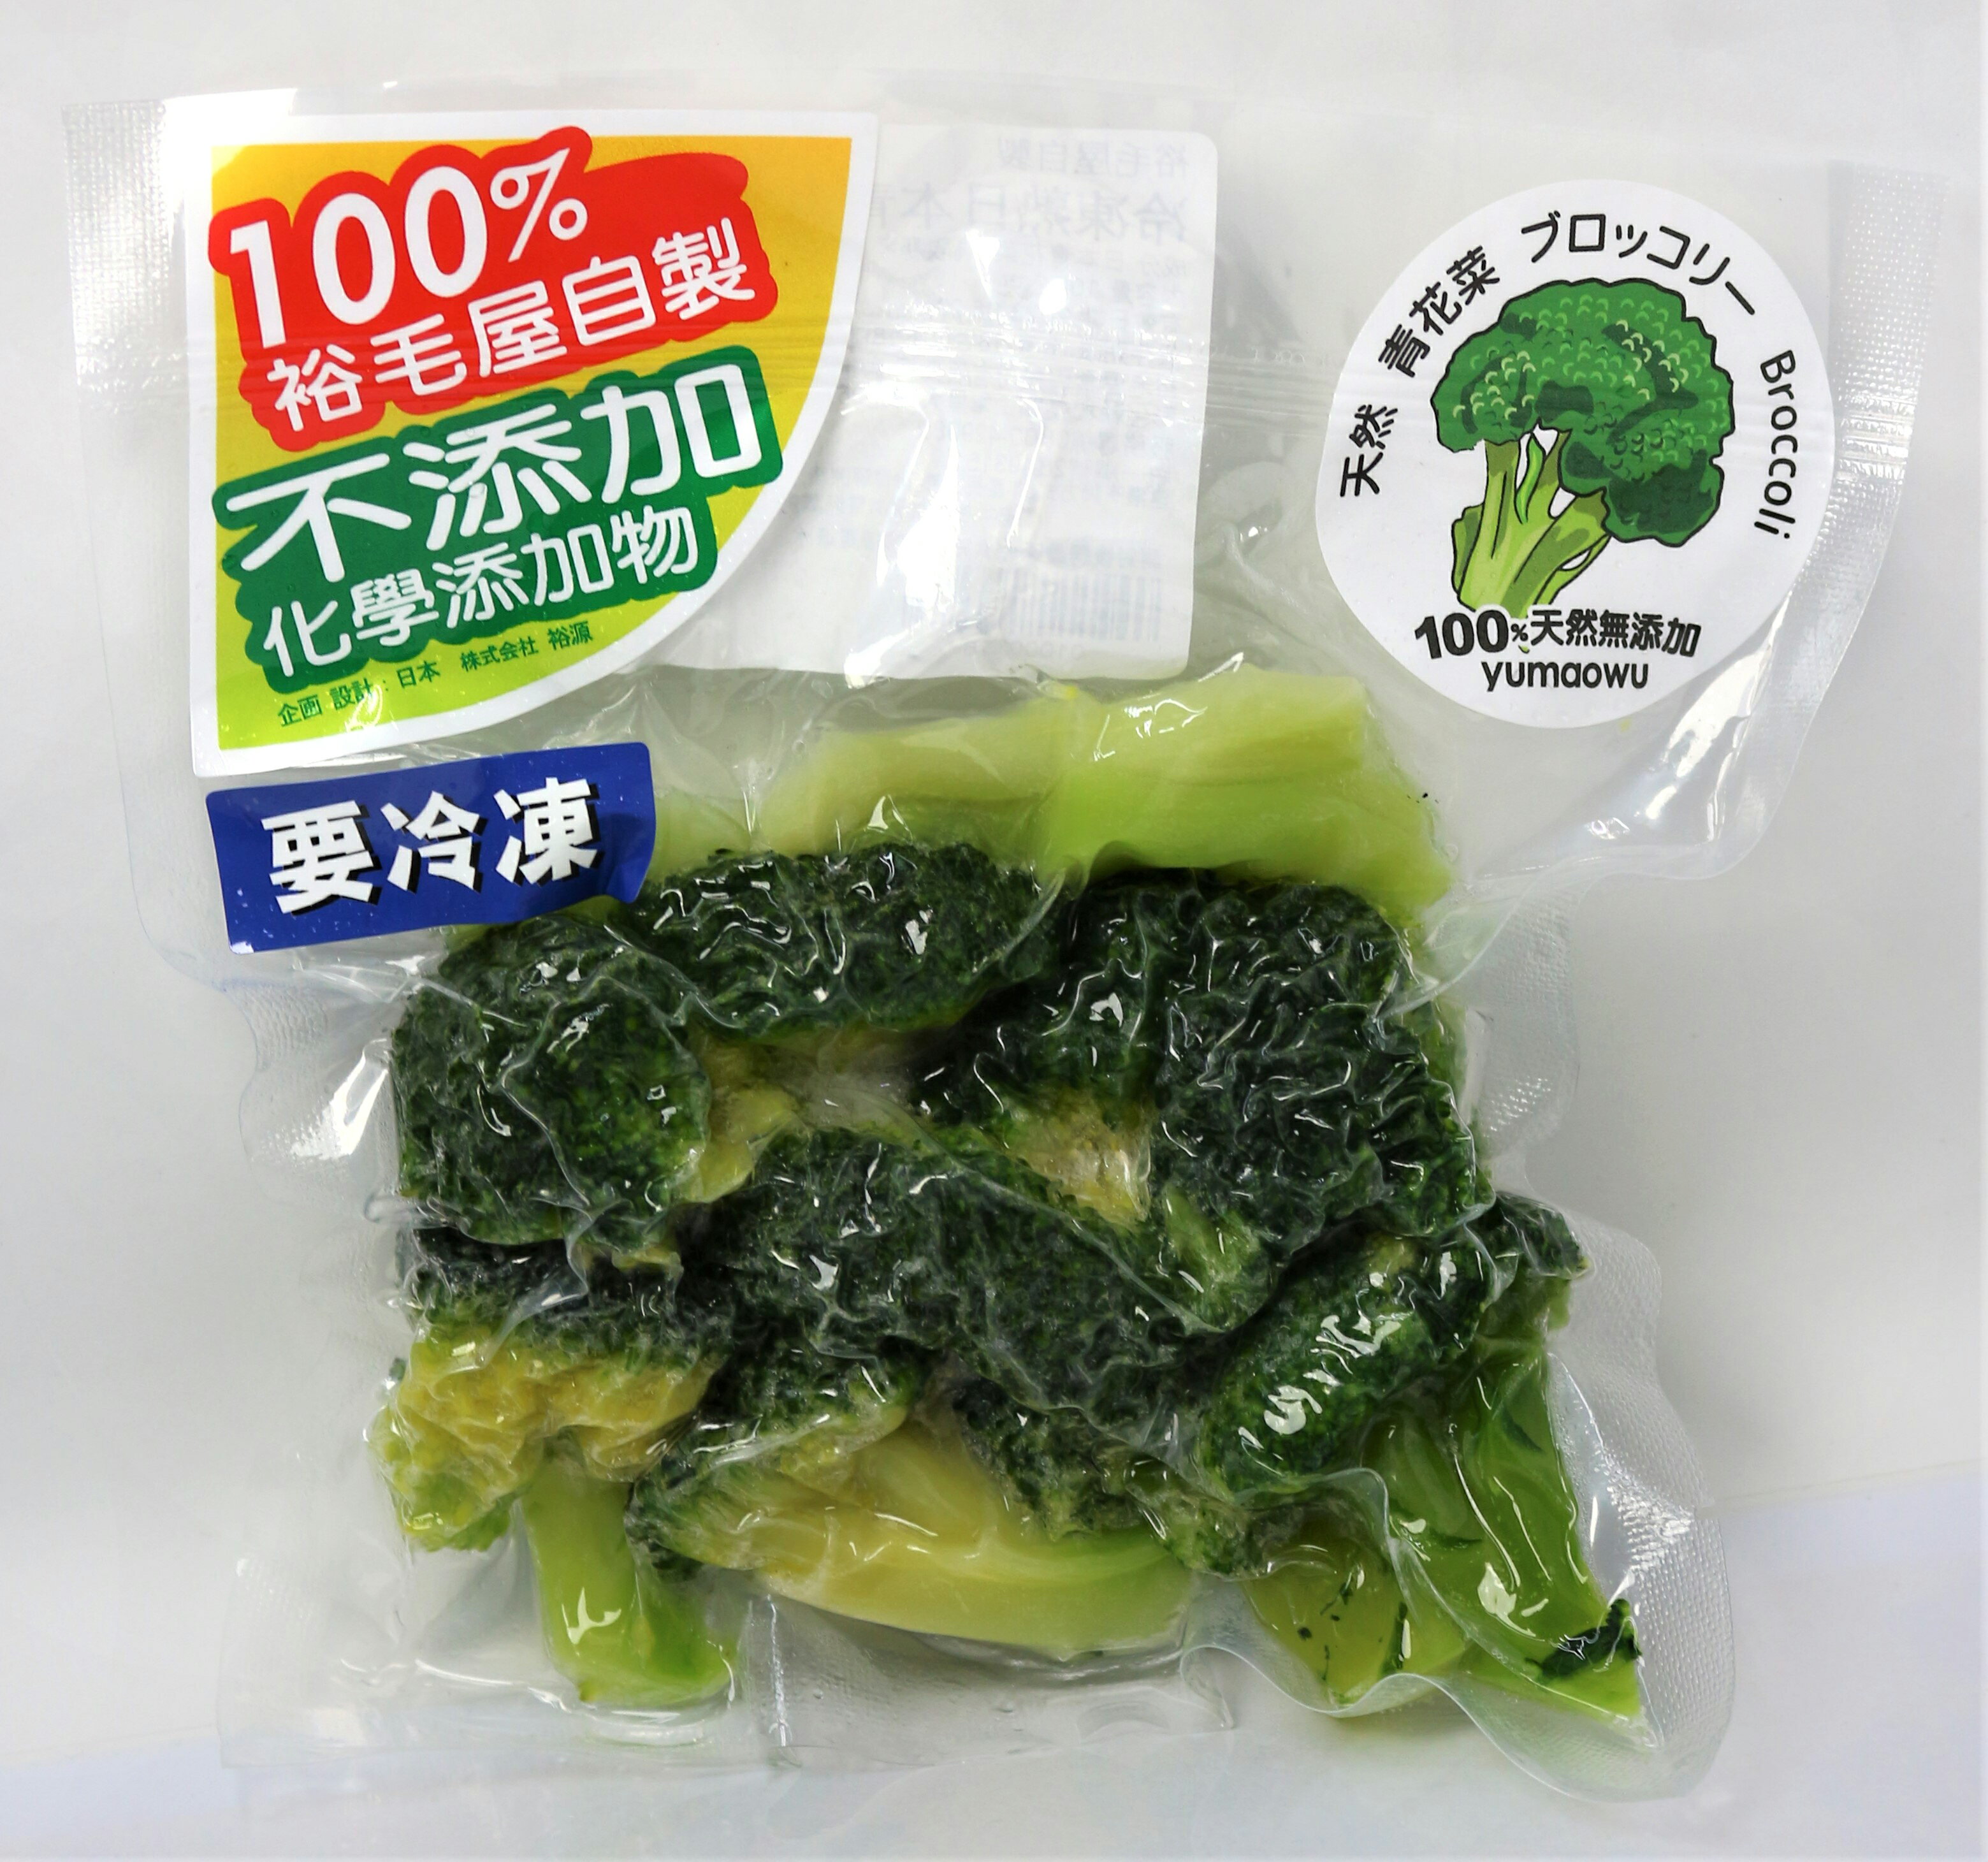 裕毛屋 冷凍日本青花菜 冷凍蔬菜 裕毛屋生鮮超市直營店 樂天市場rakuten